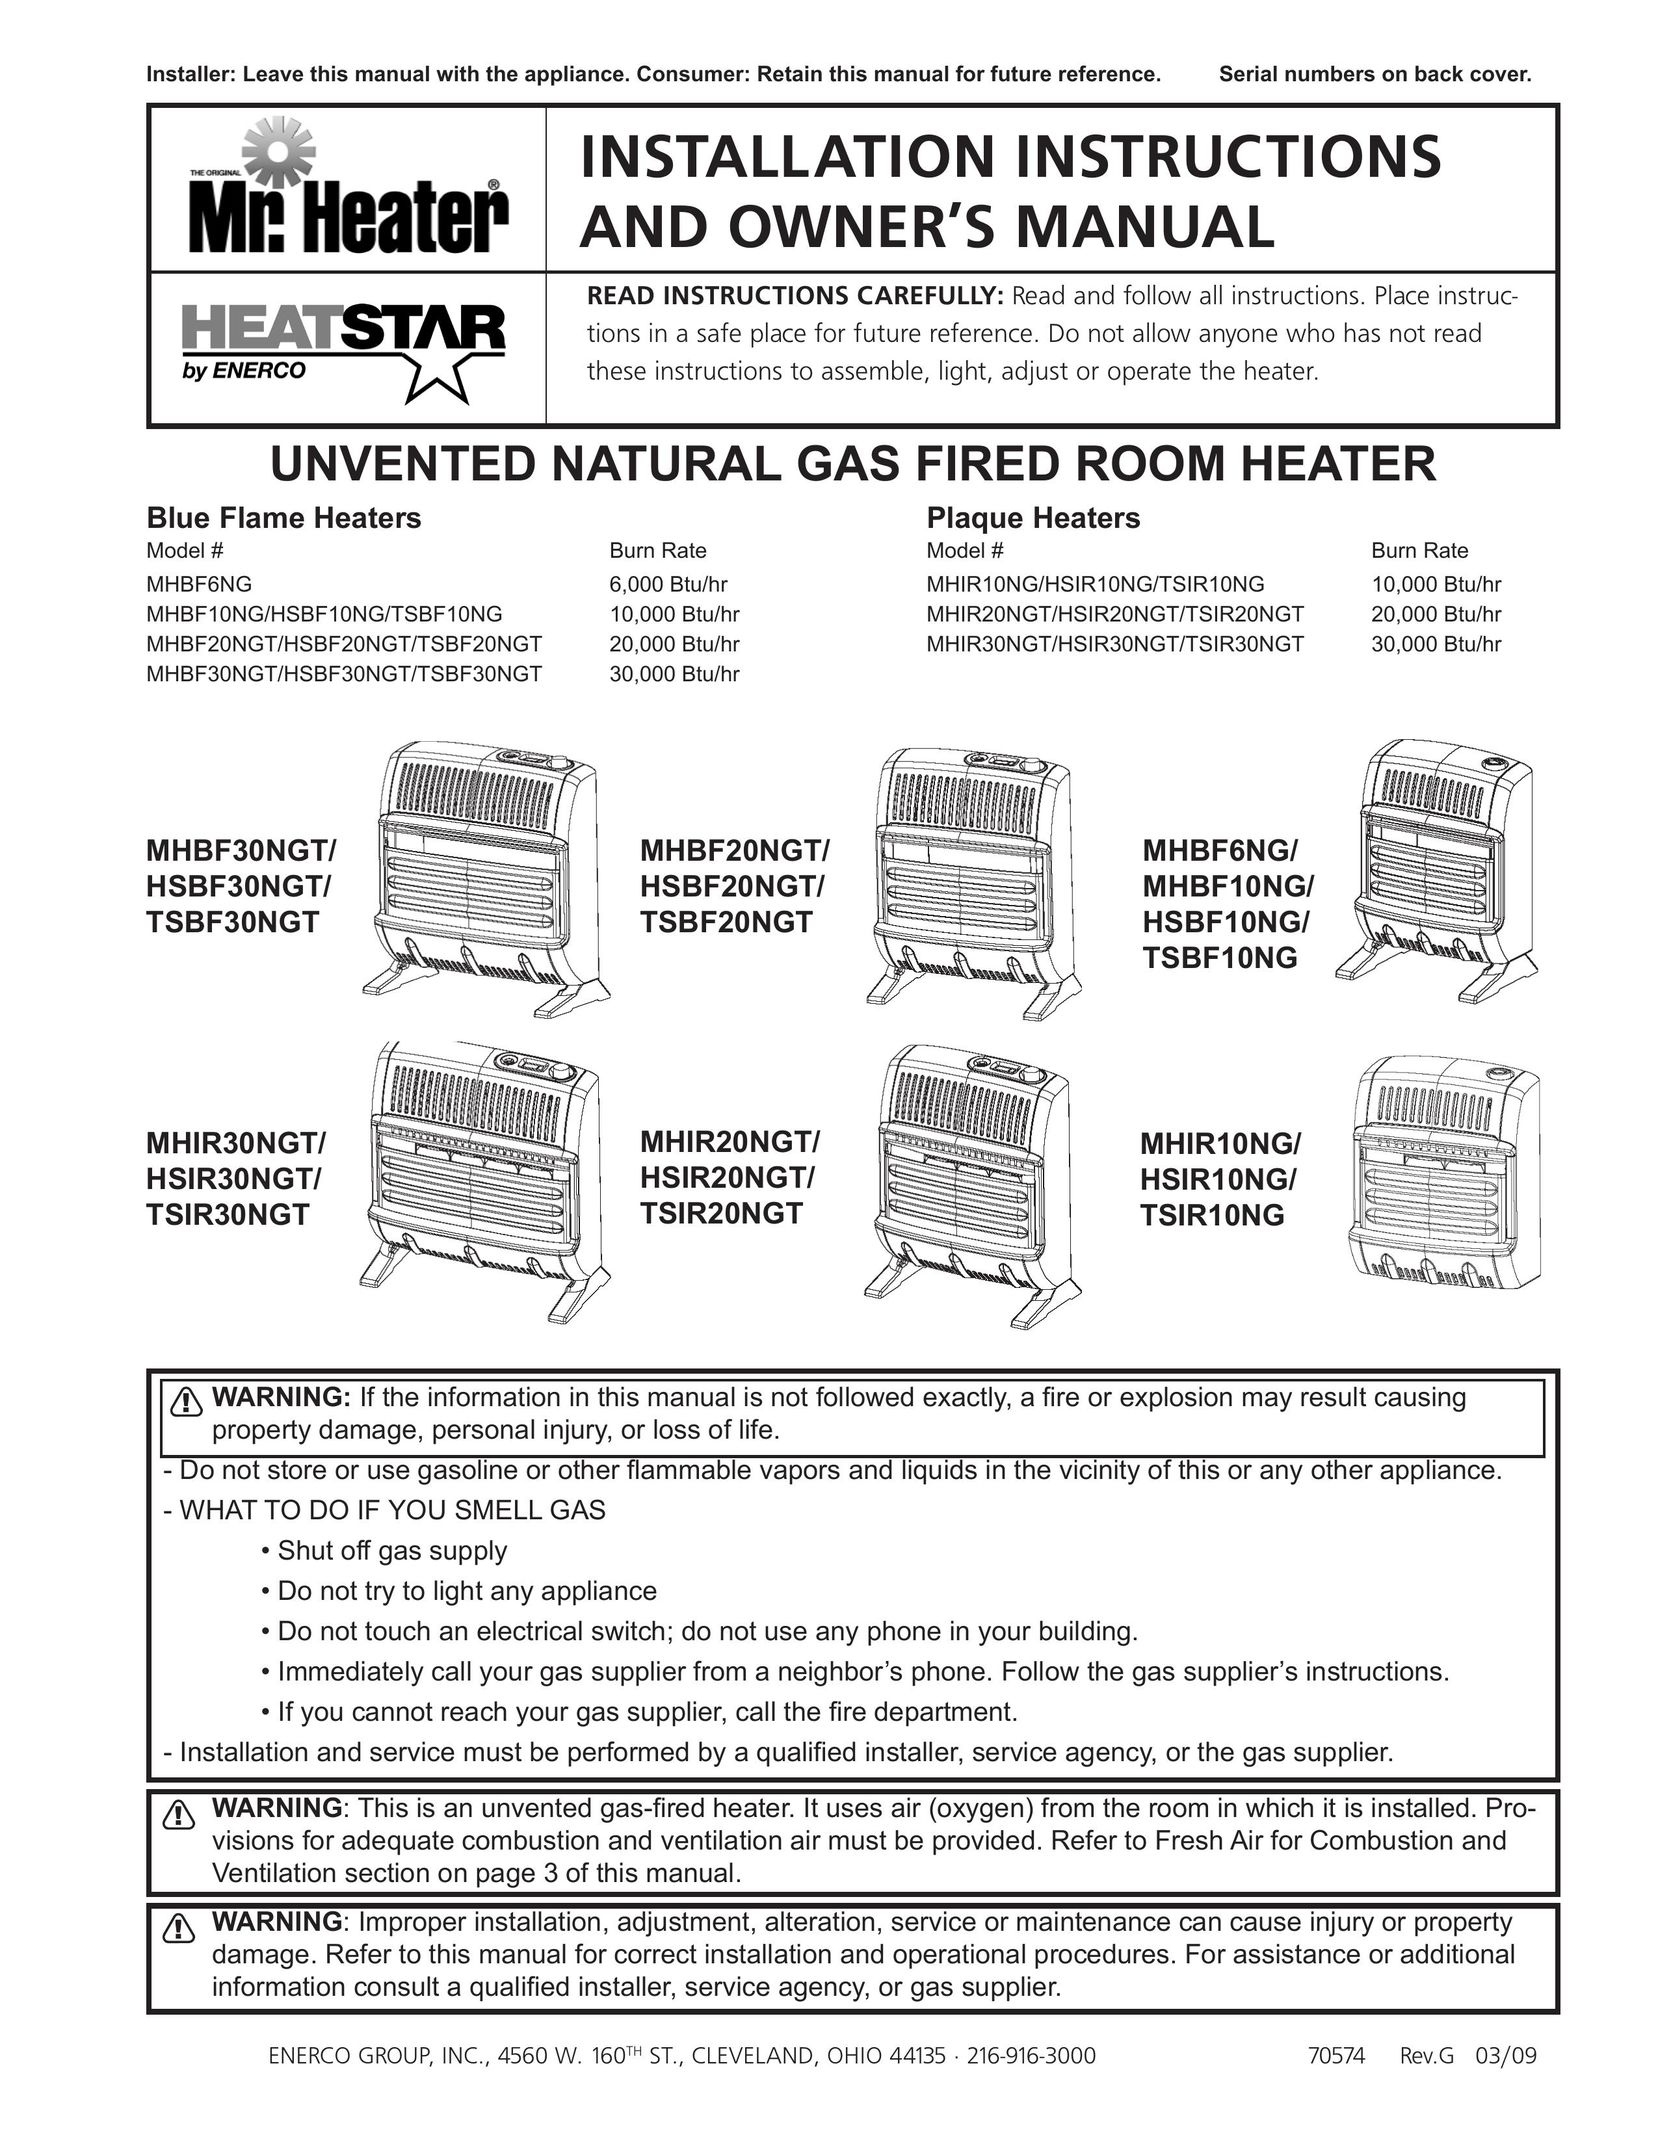 Enerco MHIR20NGT Gas Heater User Manual